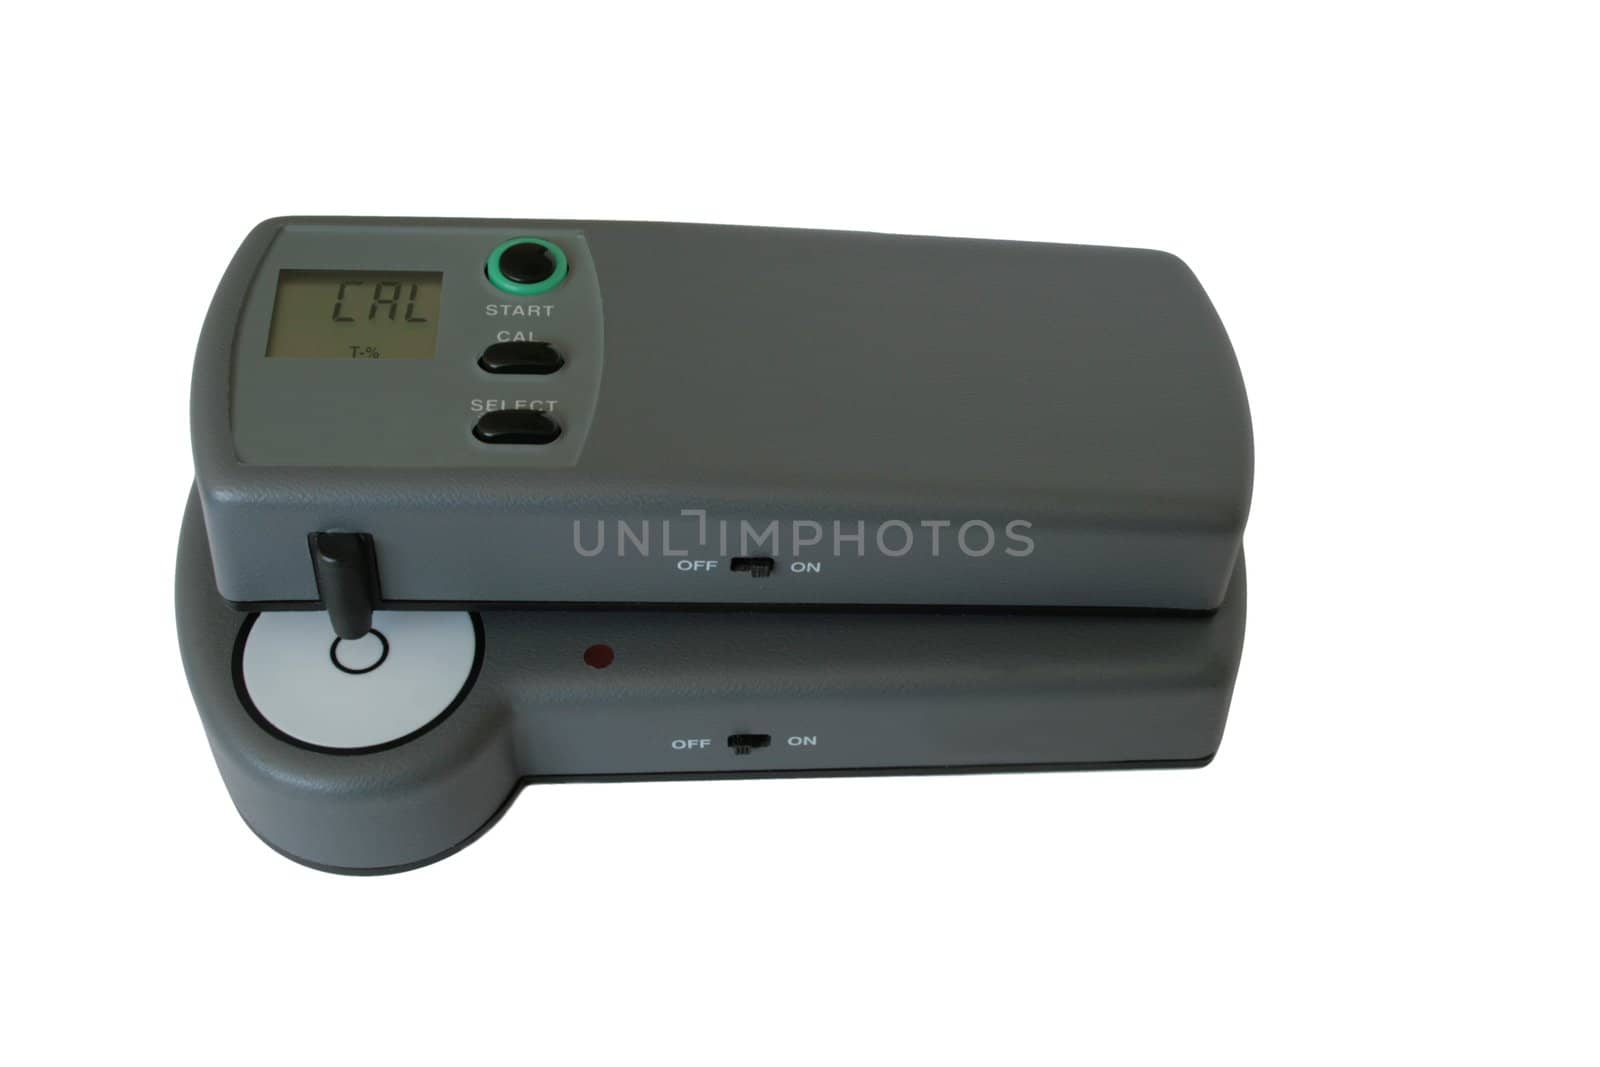 prepress film densitometer in calibration mode